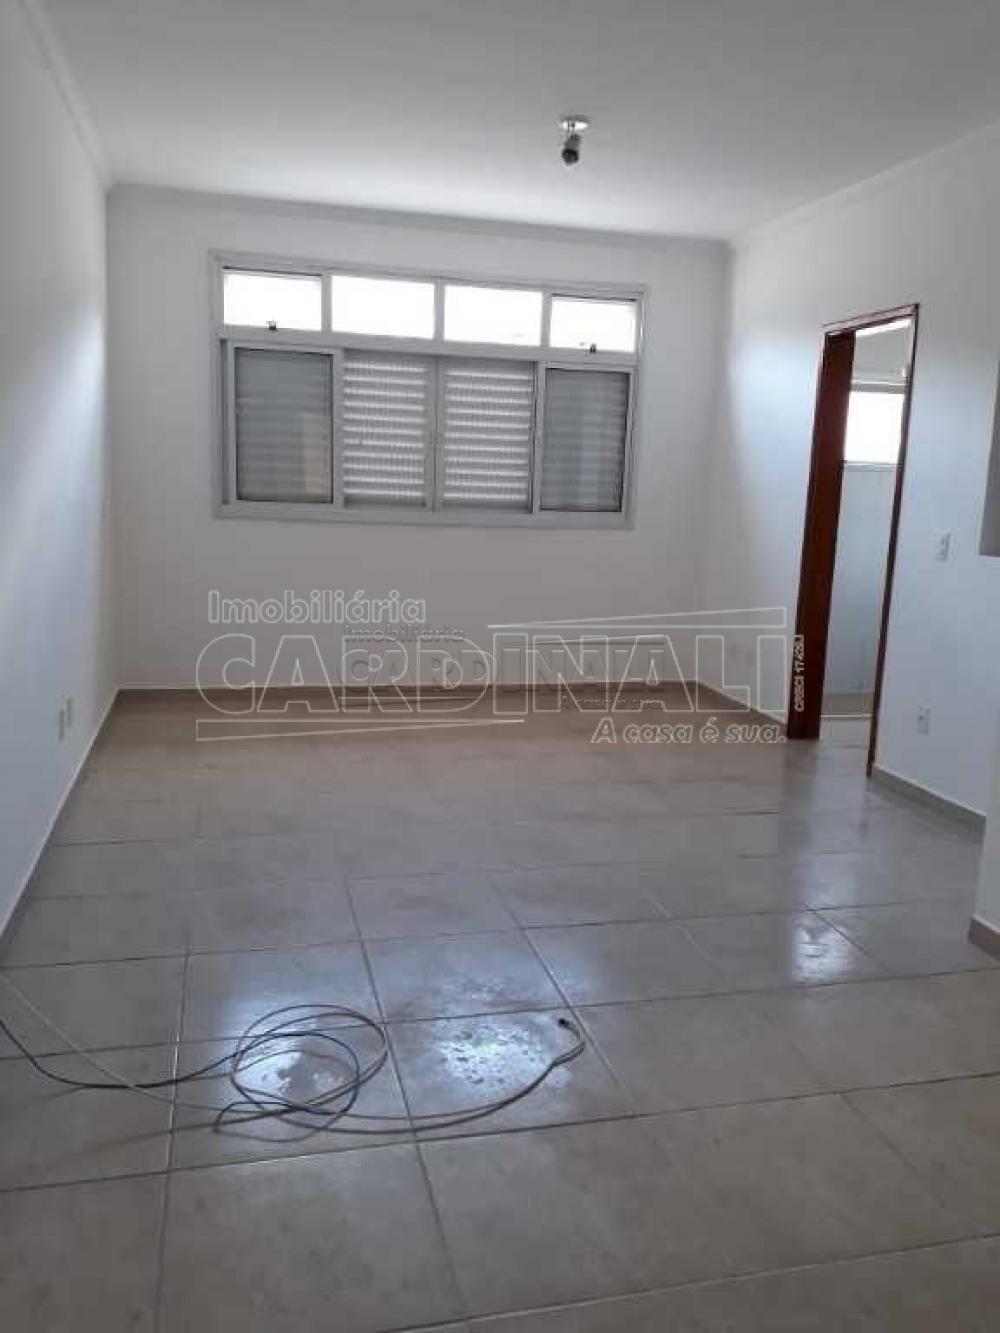 Alugar Apartamento / Padrão em São Carlos R$ 1.300,00 - Foto 5